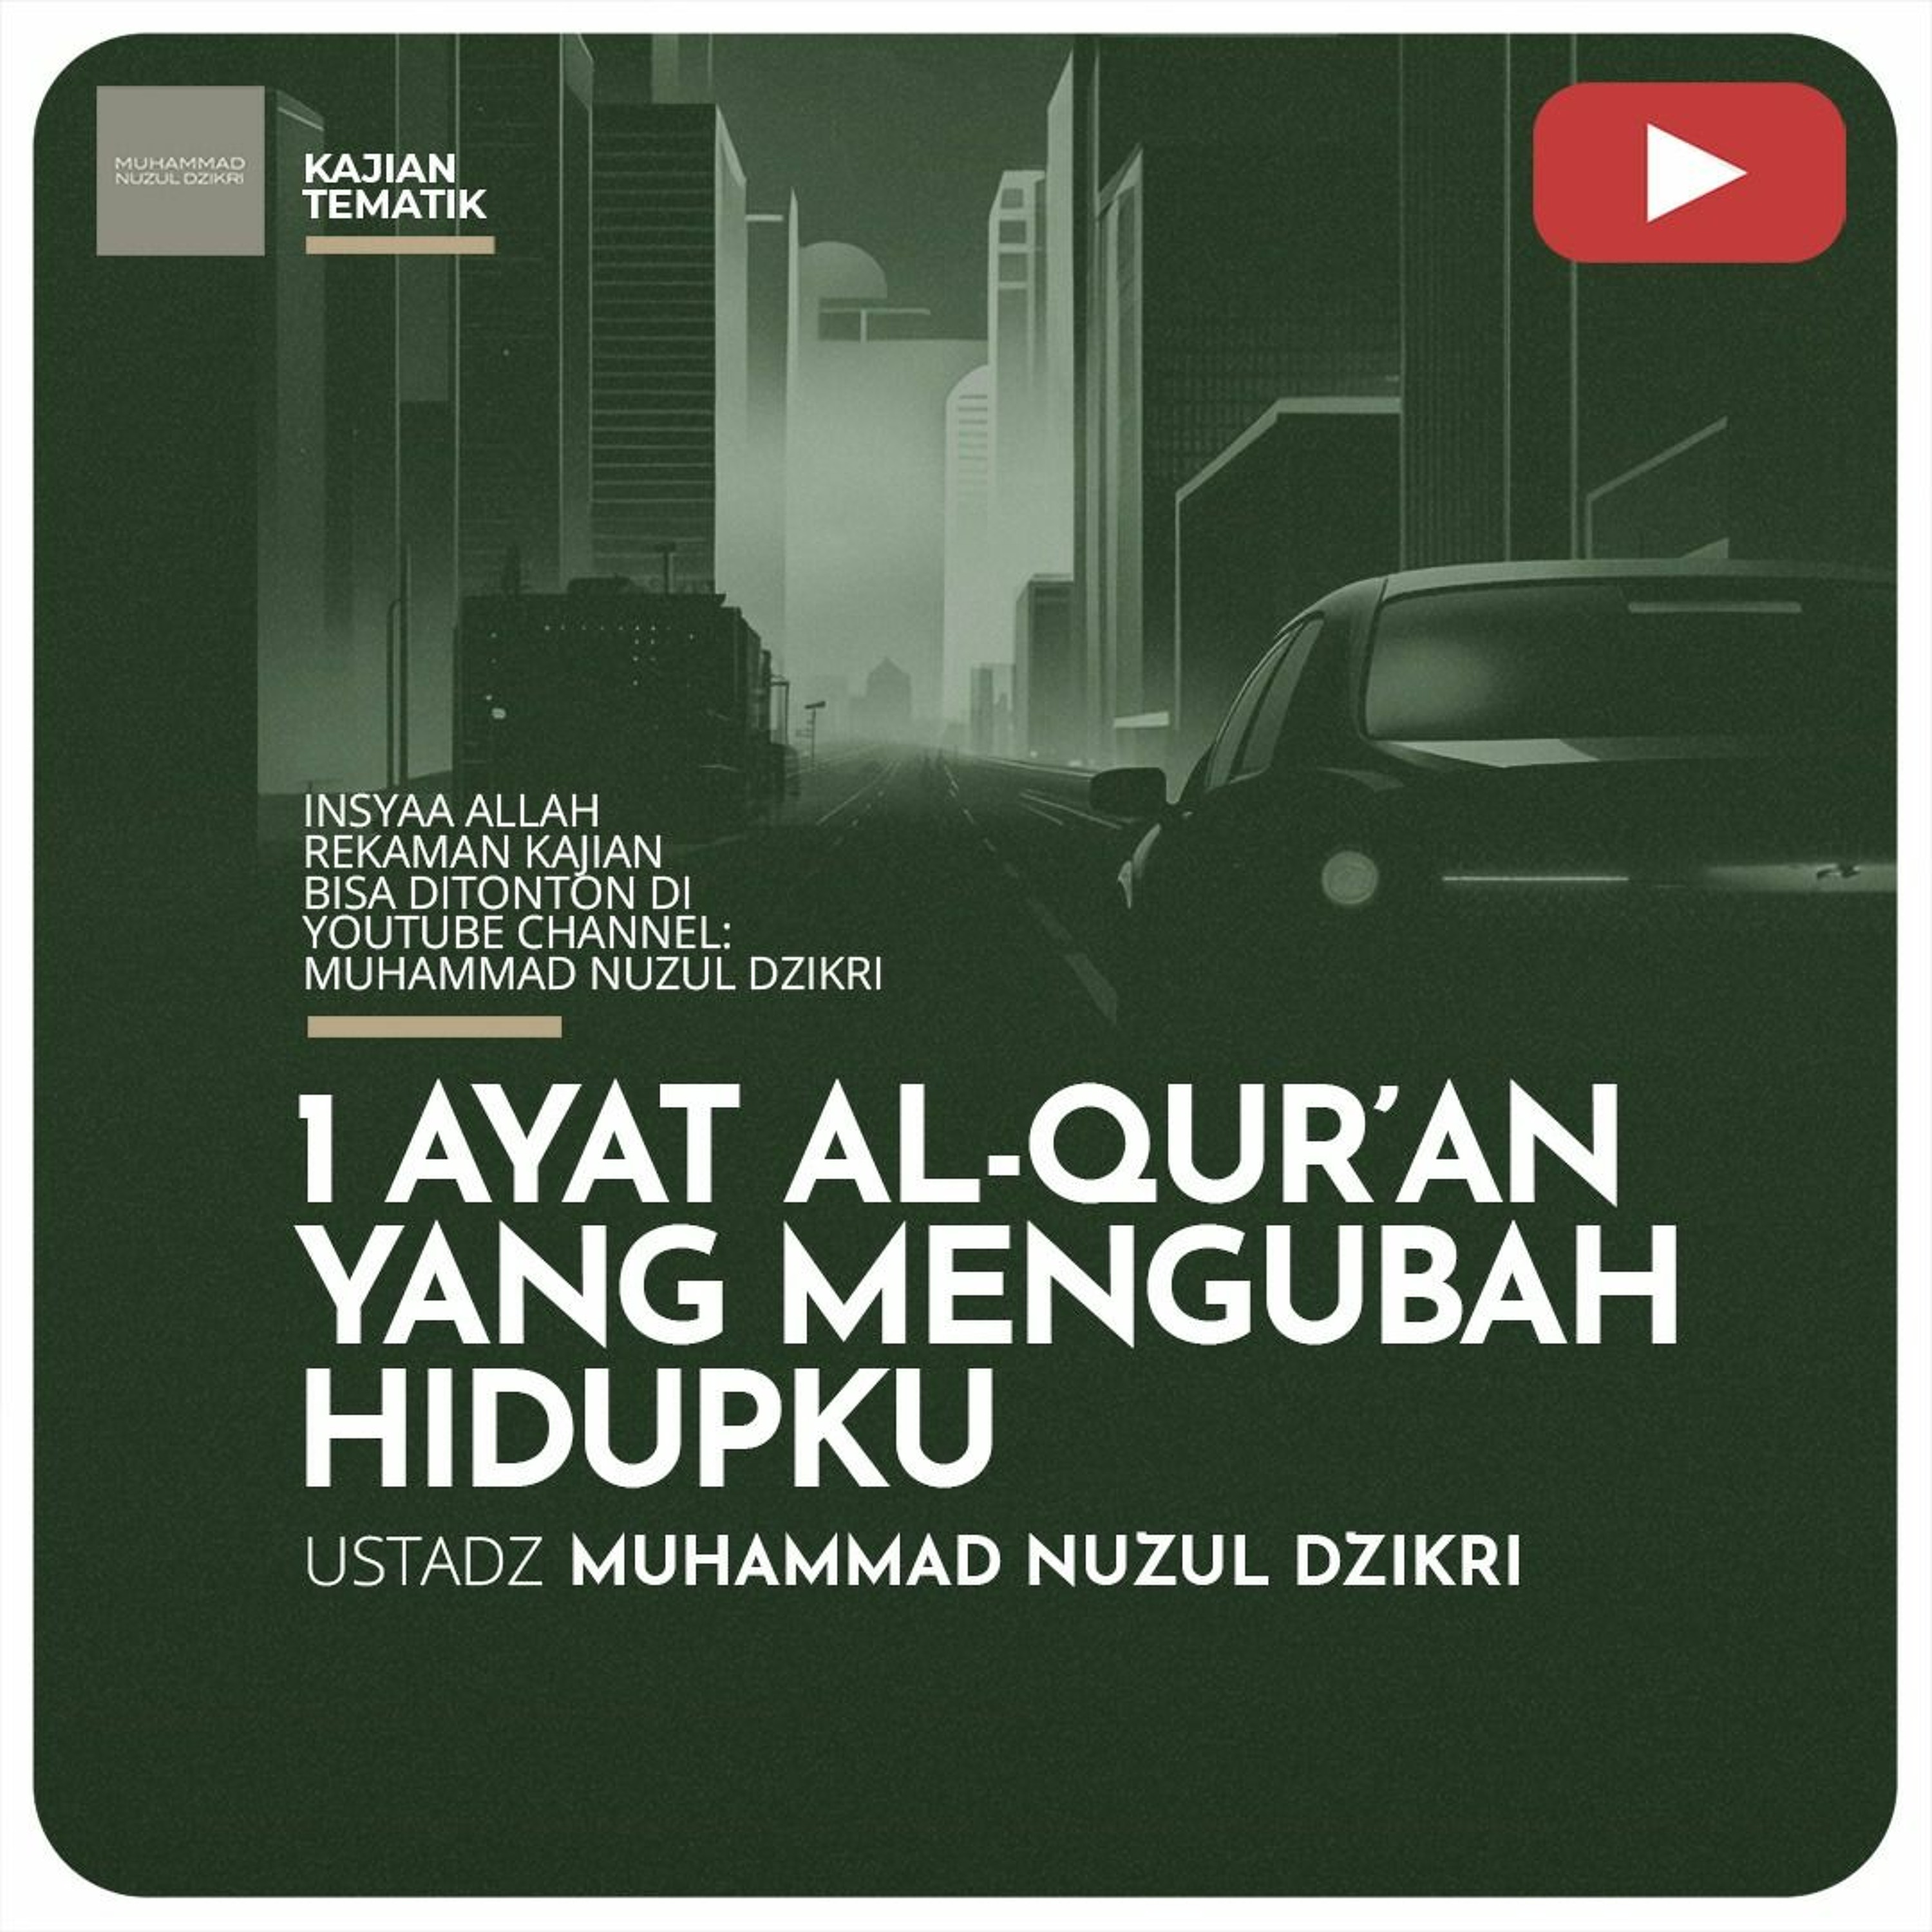 Serial Ramadhan 12. ”1 AYAT AL-QURAN YANG MENGUBAH HIDUPKU” - Ustadz Muhammad Nuzul Dzikri